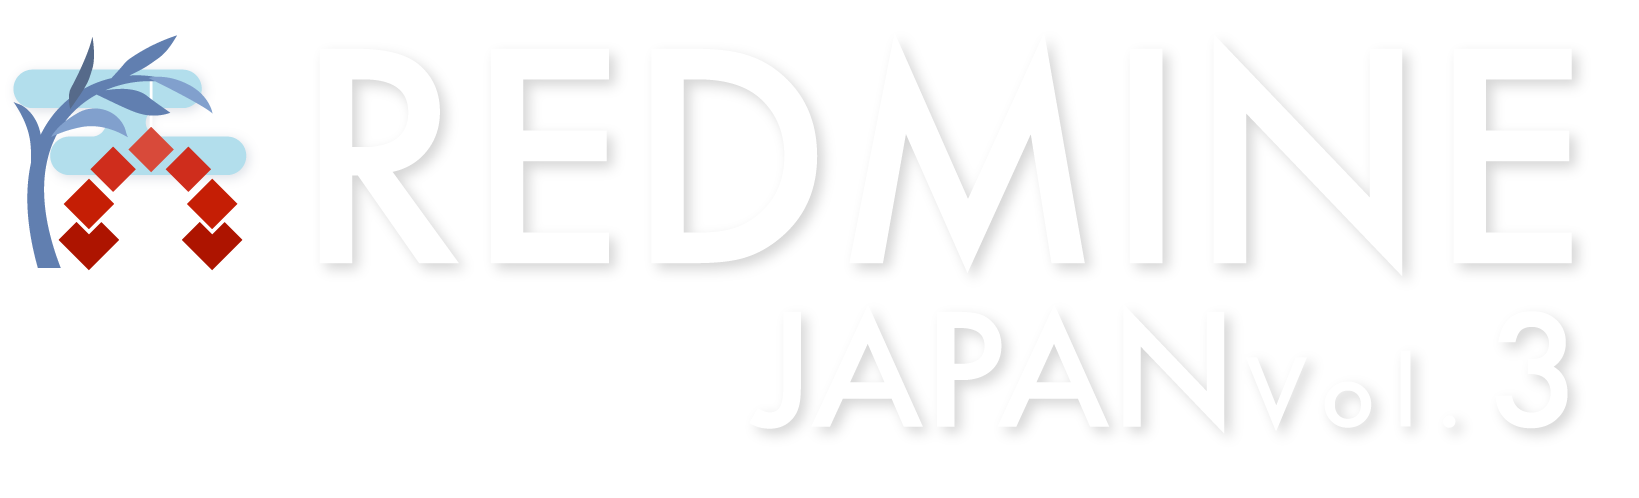 Redmine Japan Vol.3